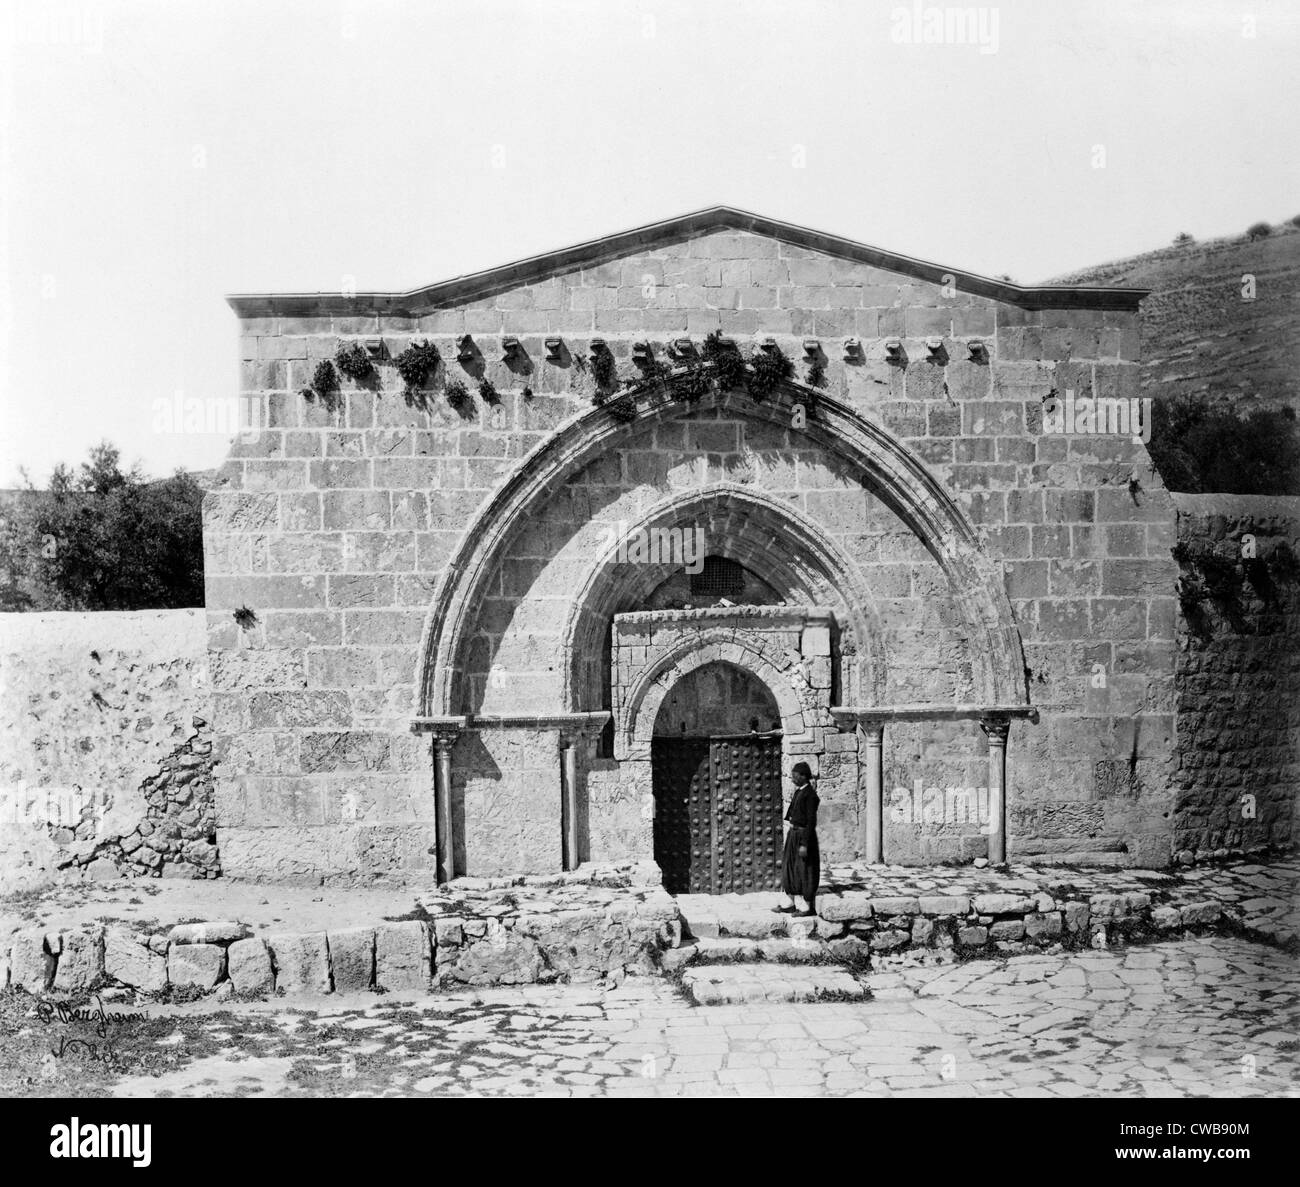 La tombe de la Vierge Marie et la grotte de l'agonie, Jérusalem, Israël, datant de la fin du xixe siècle. Banque D'Images